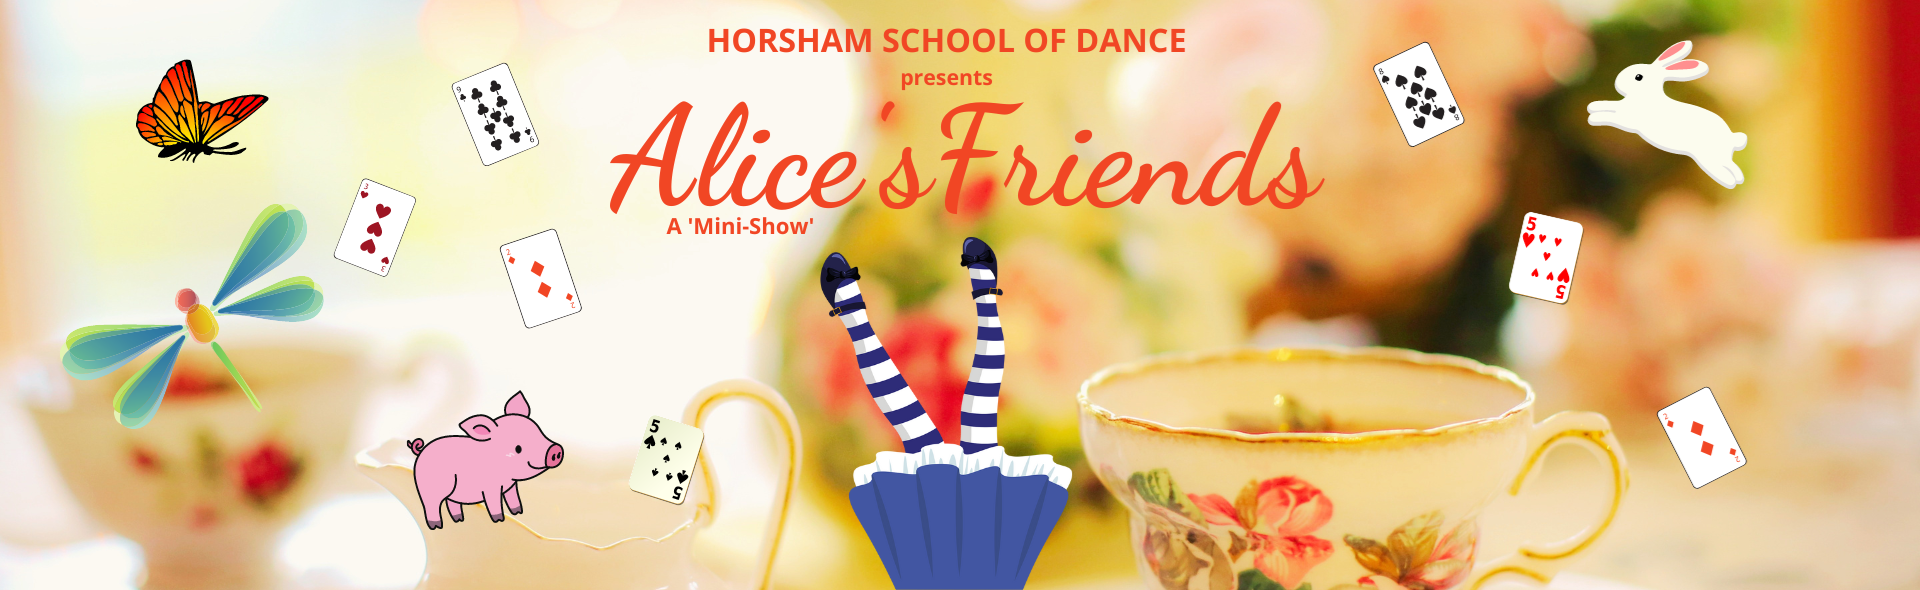 Horsham School of Dance presents: Alice's Friends